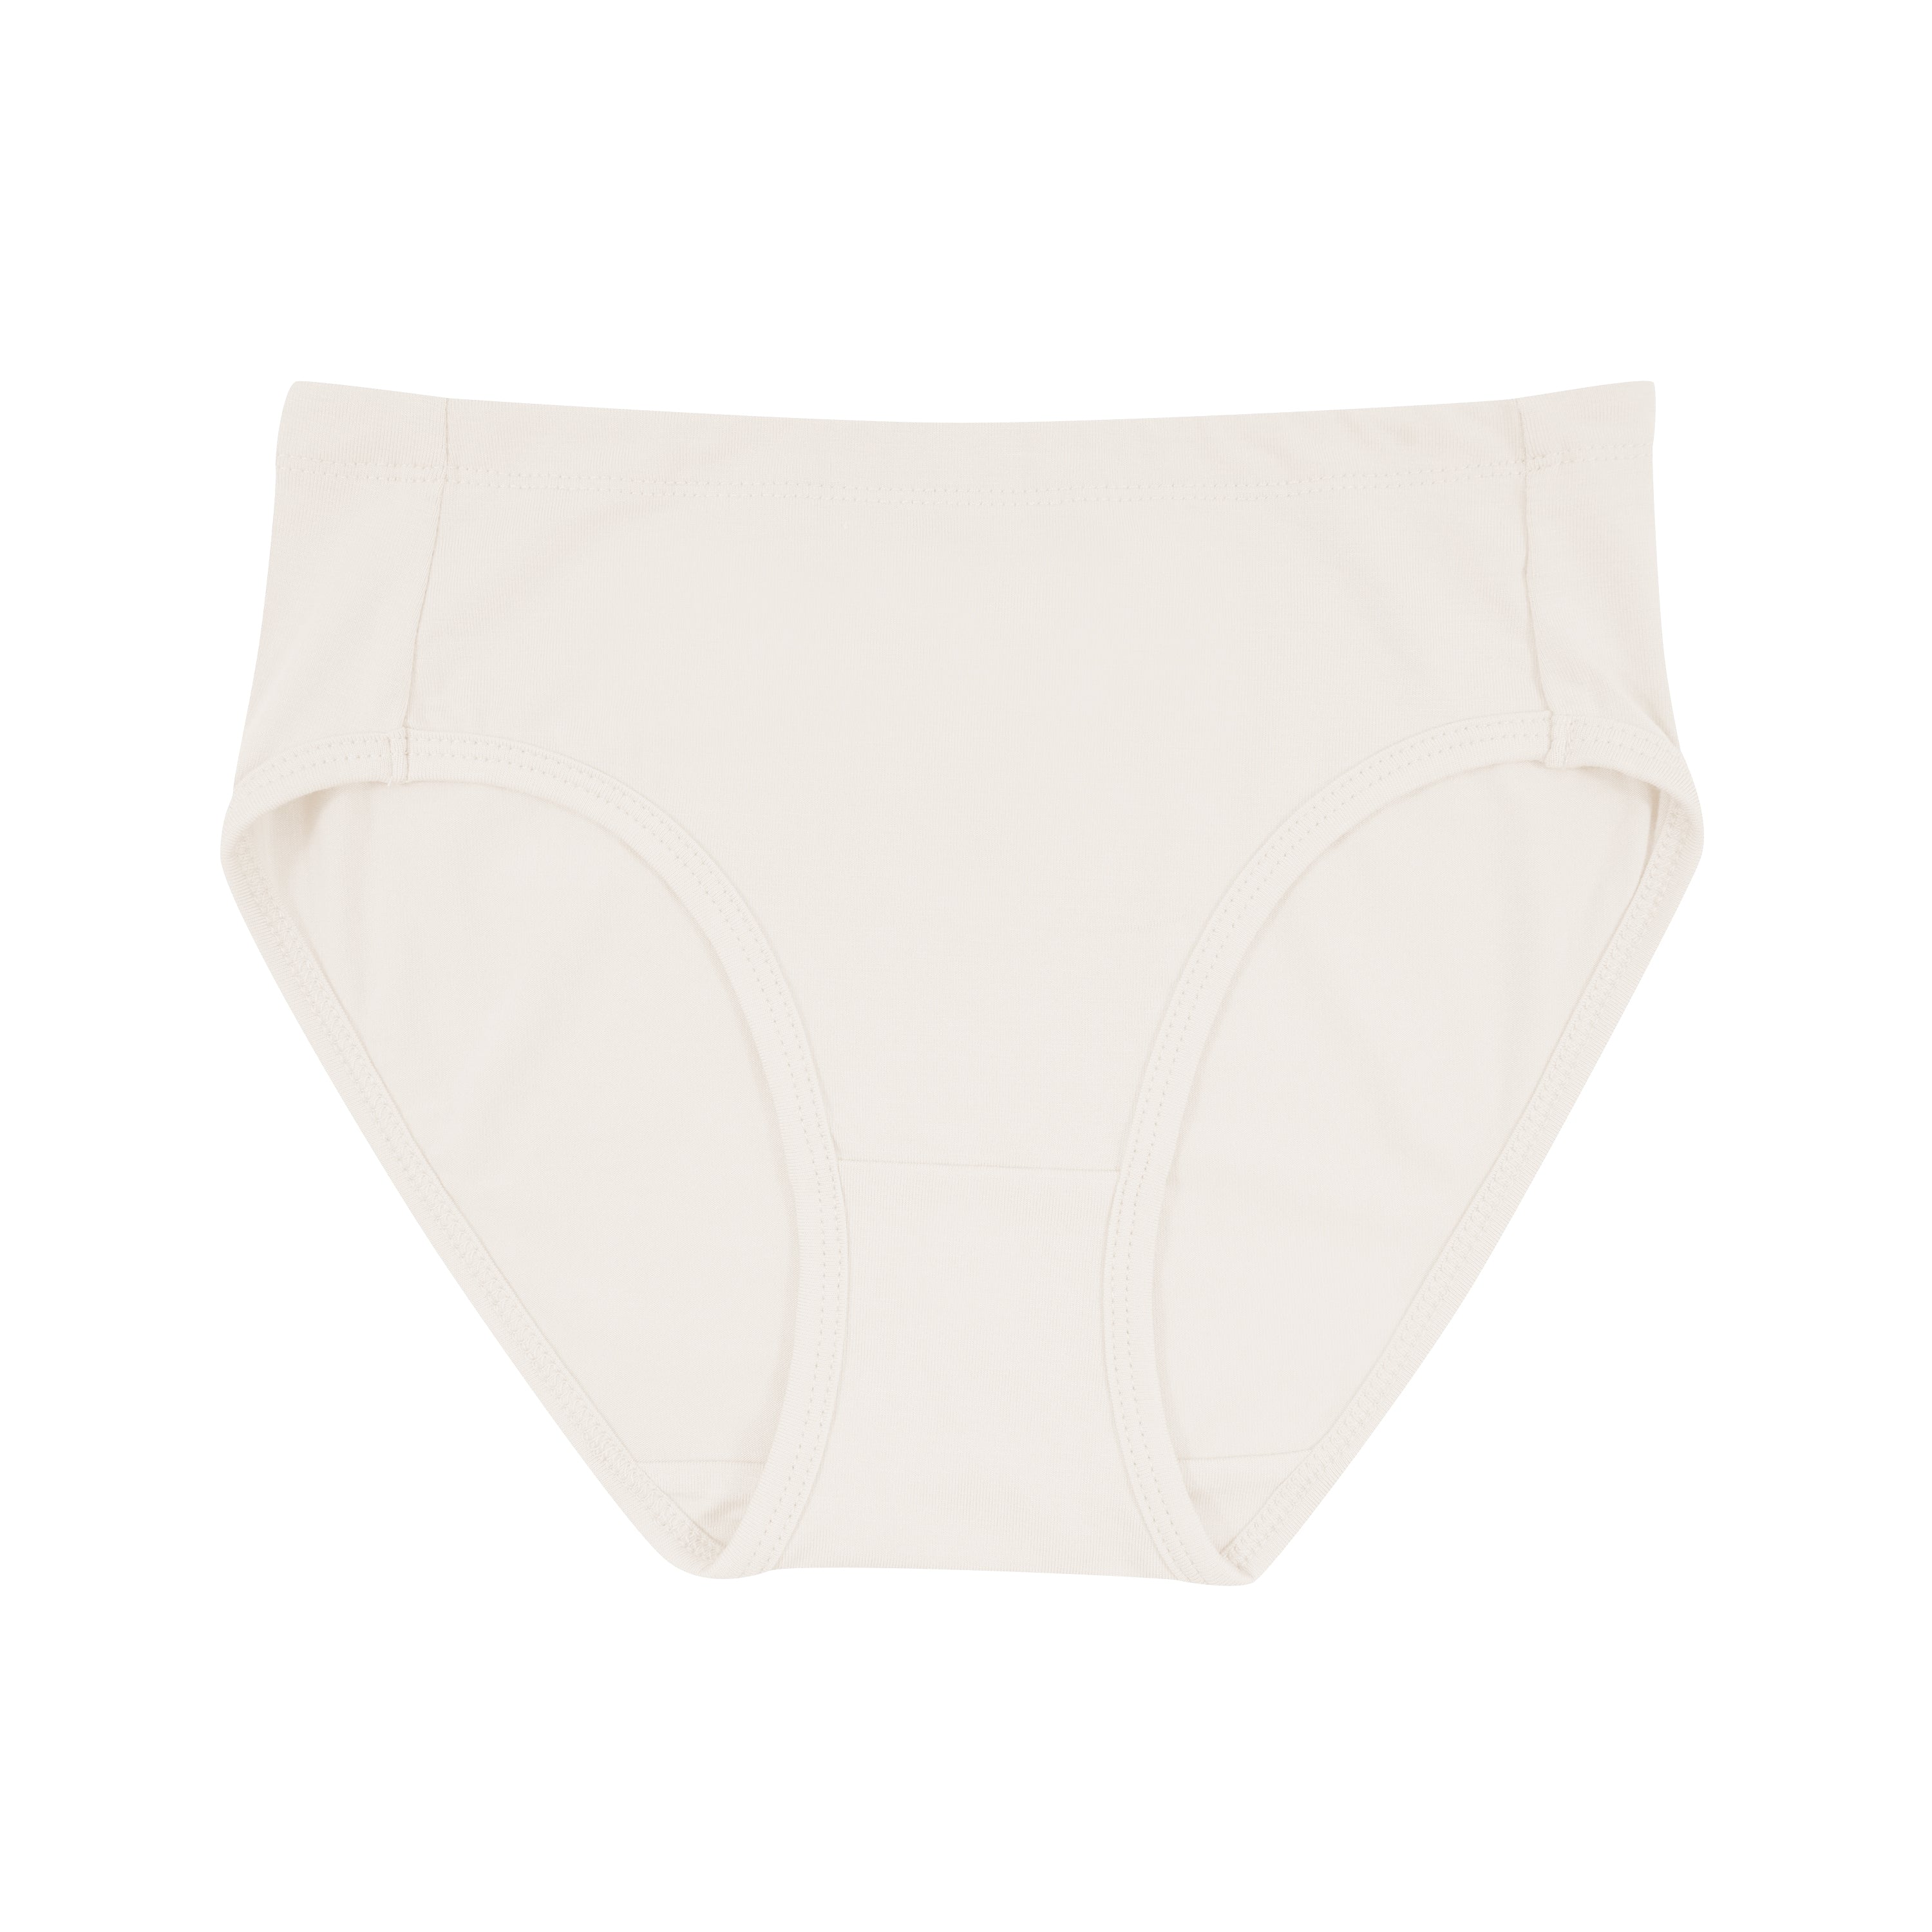 6 Packs Girls Cotton Underwear Briefs Breathable Algeria